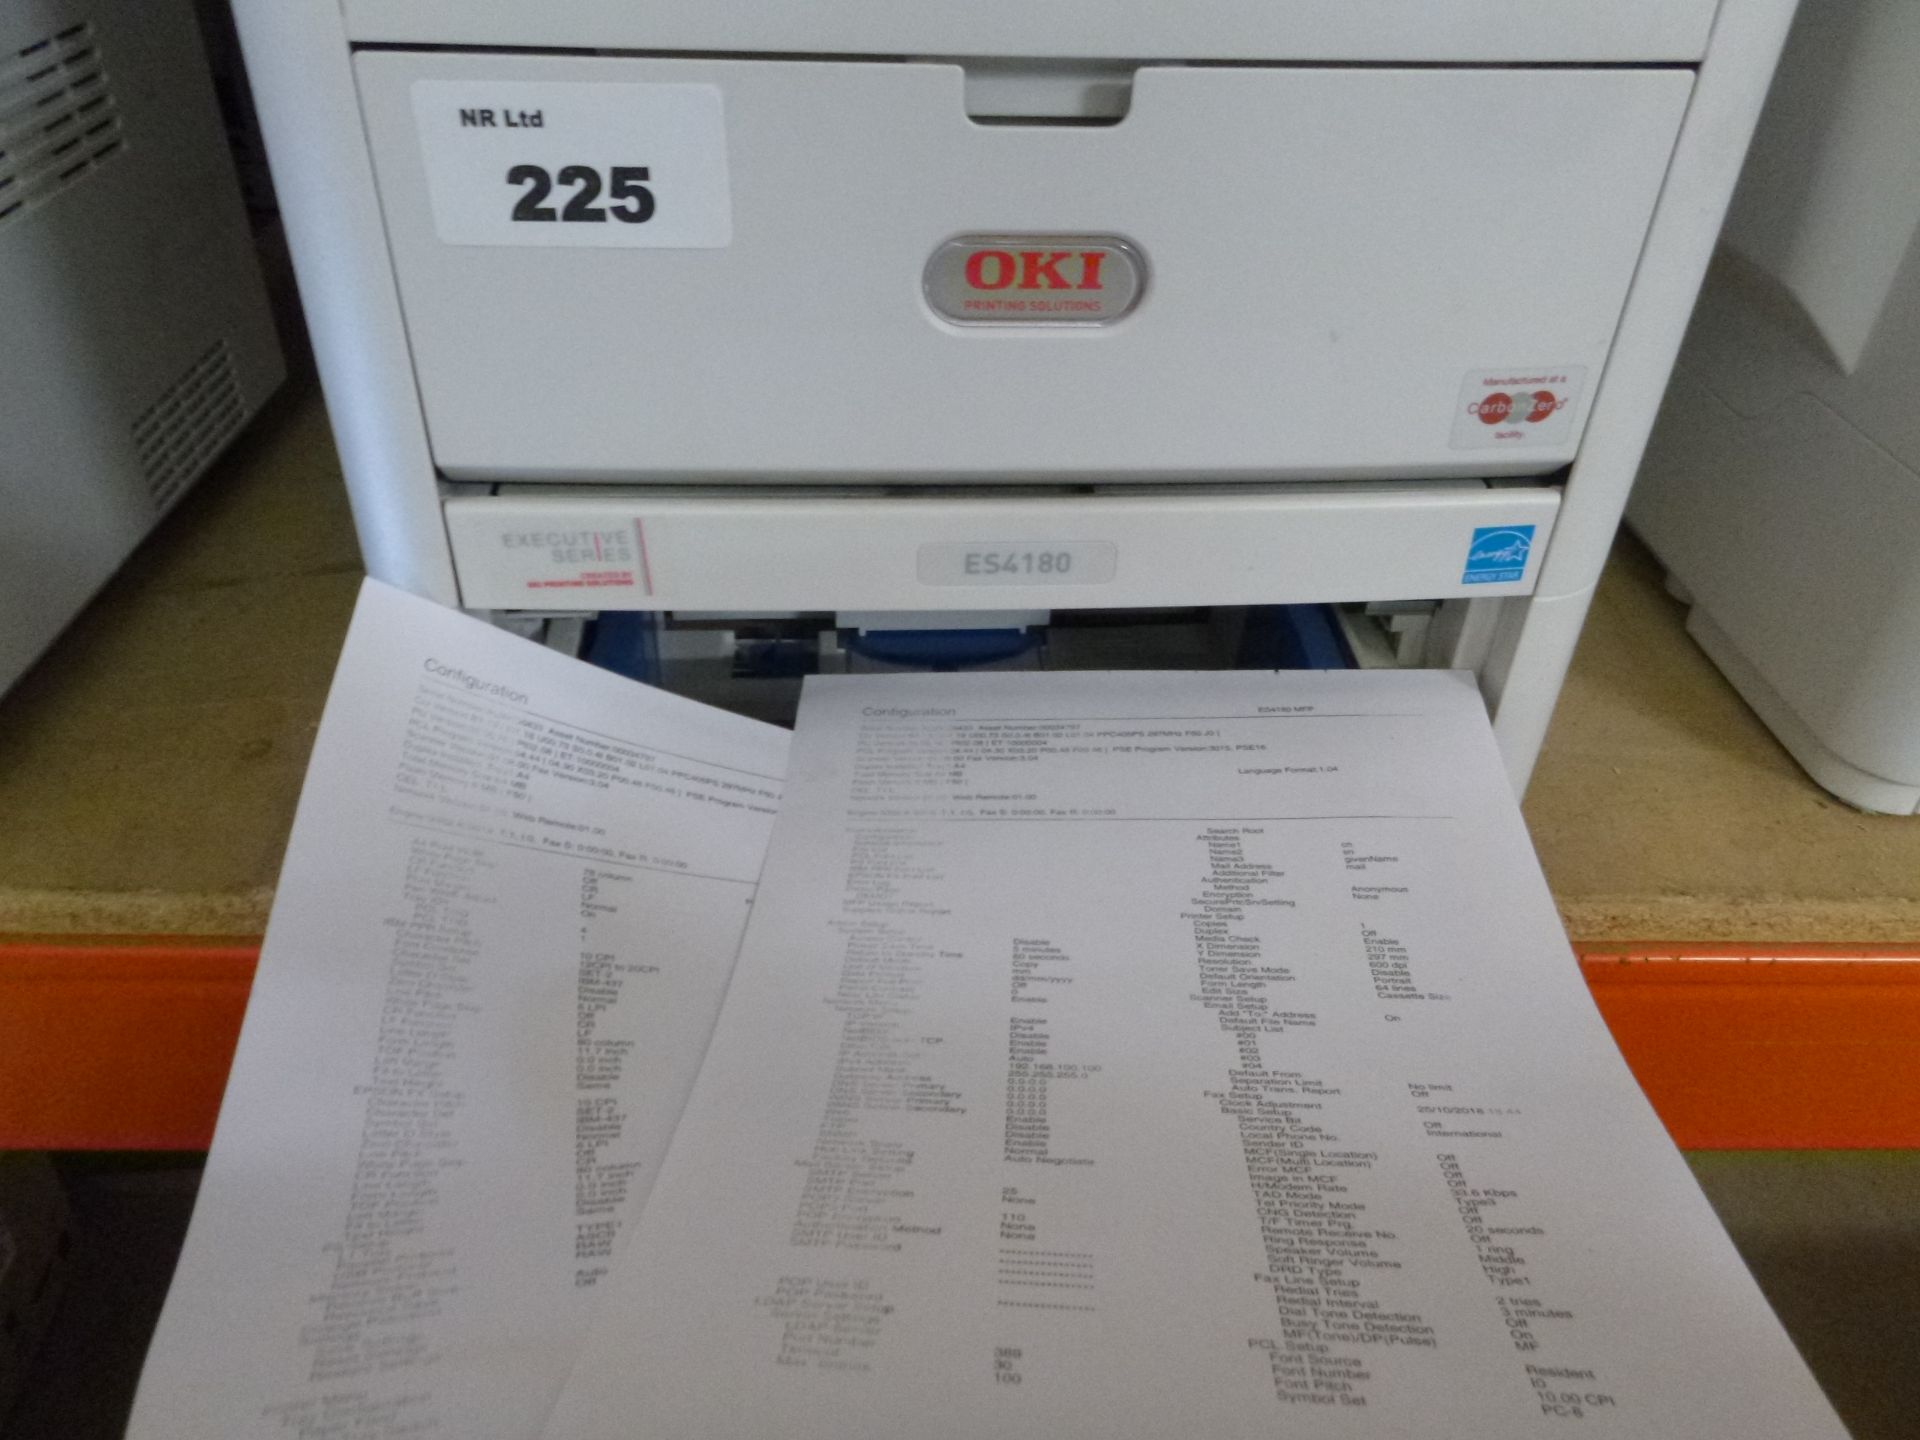 OKI ES4180mfp NETWORK Laser printer with test print - Bild 2 aus 2